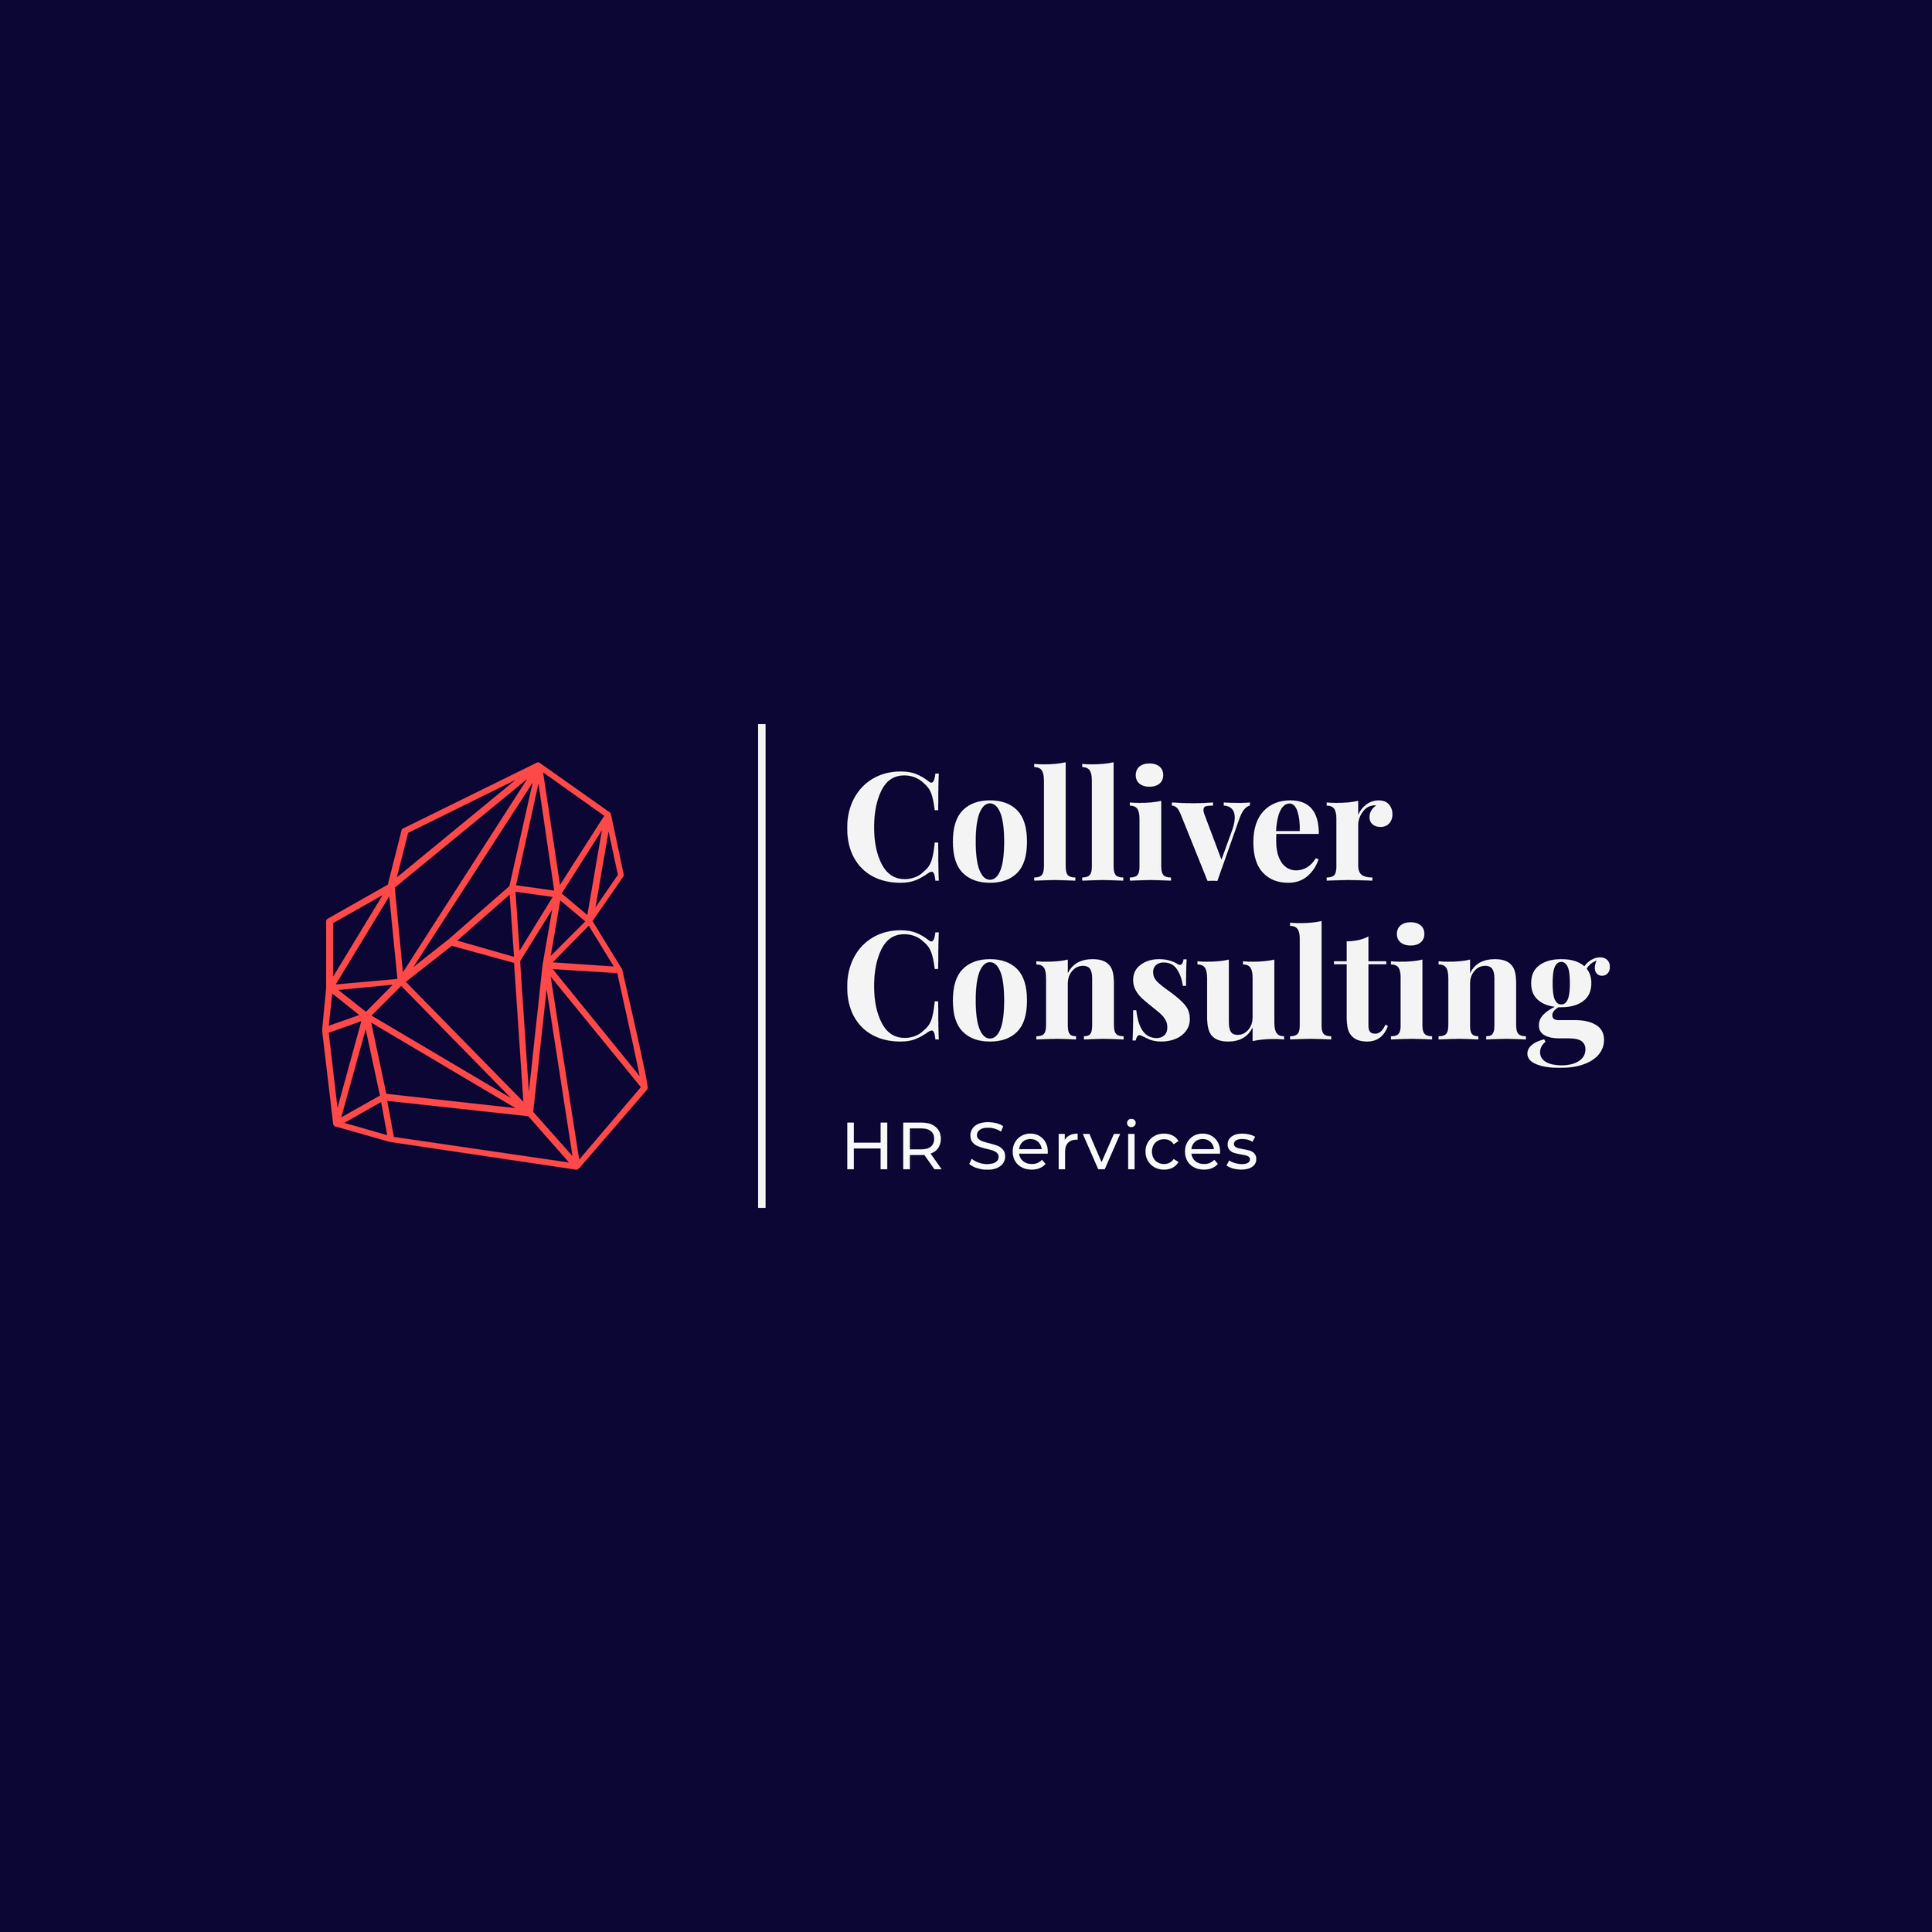 Colliver Consulting Ltd